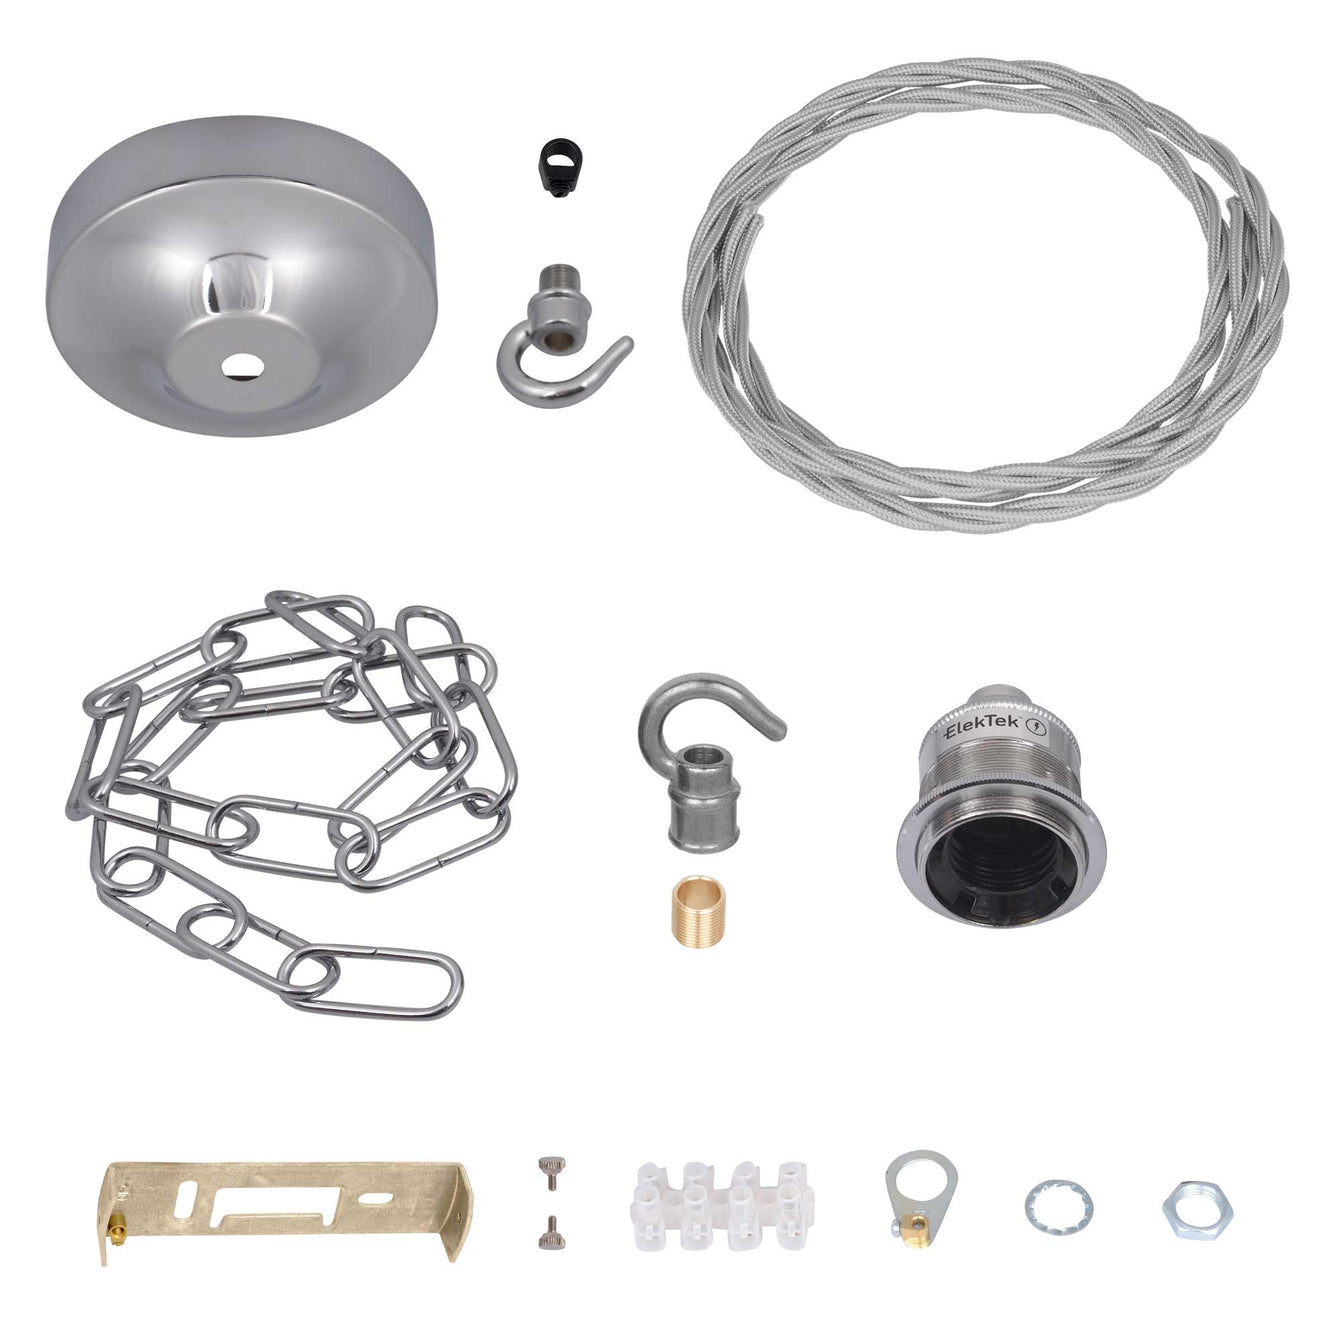 ElekTek Premium Pendant Light Kit DIY 100mm Convex Ceiling Rose, Chain, Twisted Flex and Lamp Holder E27 Shade Ring Hook - Buy It Better 